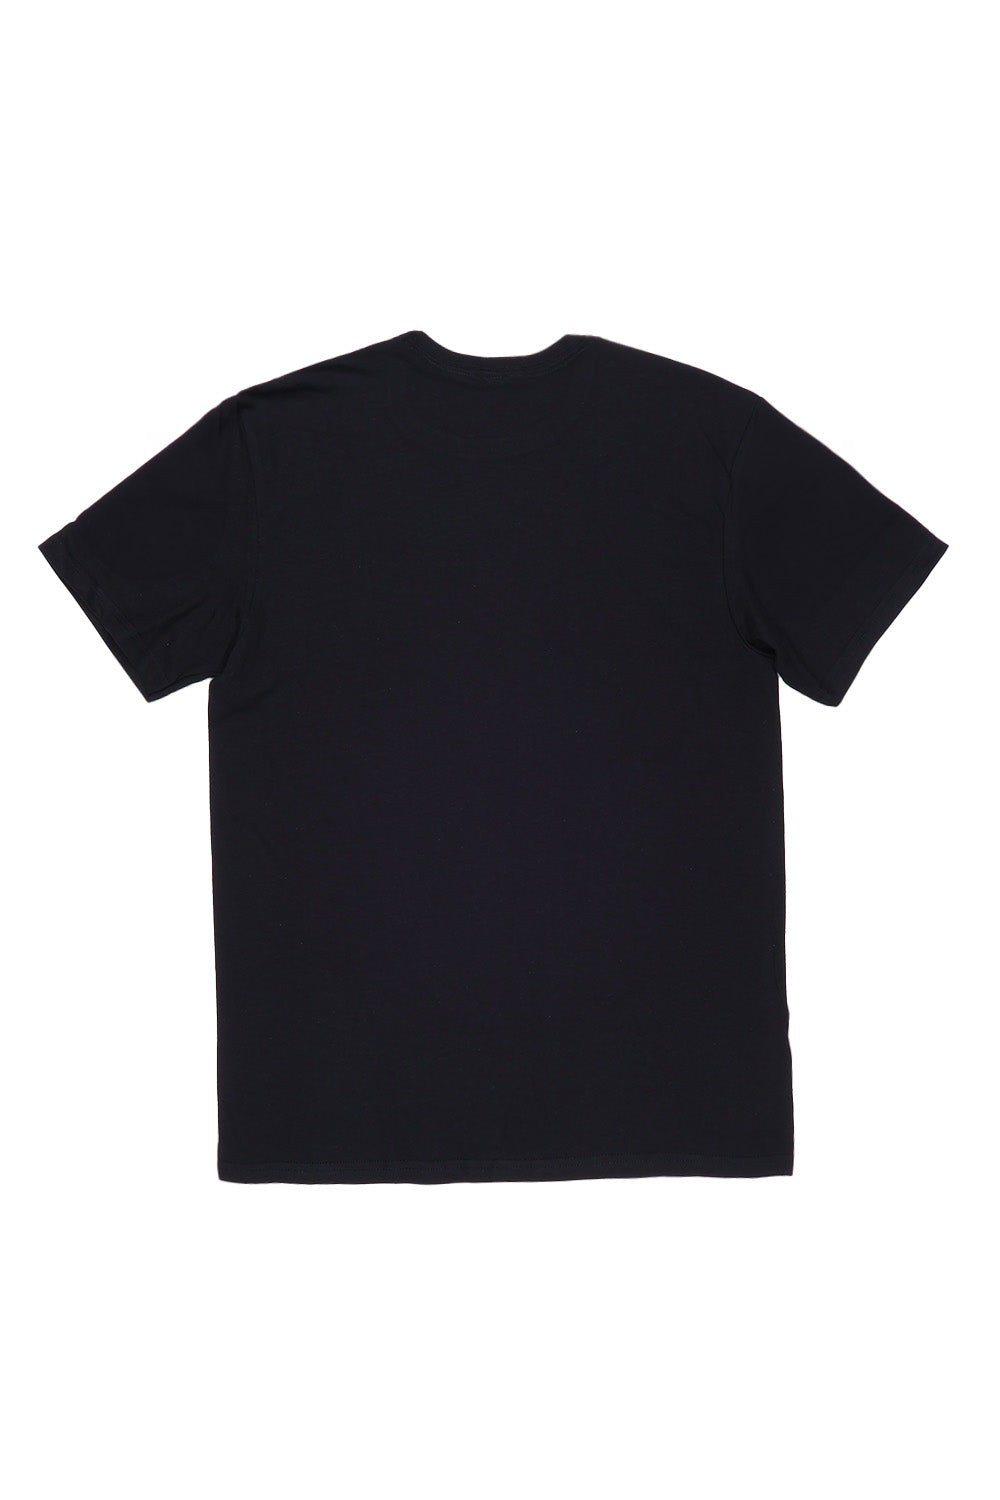 Heart With Pastel Splash T-Shirt in Black (Custom Packs)